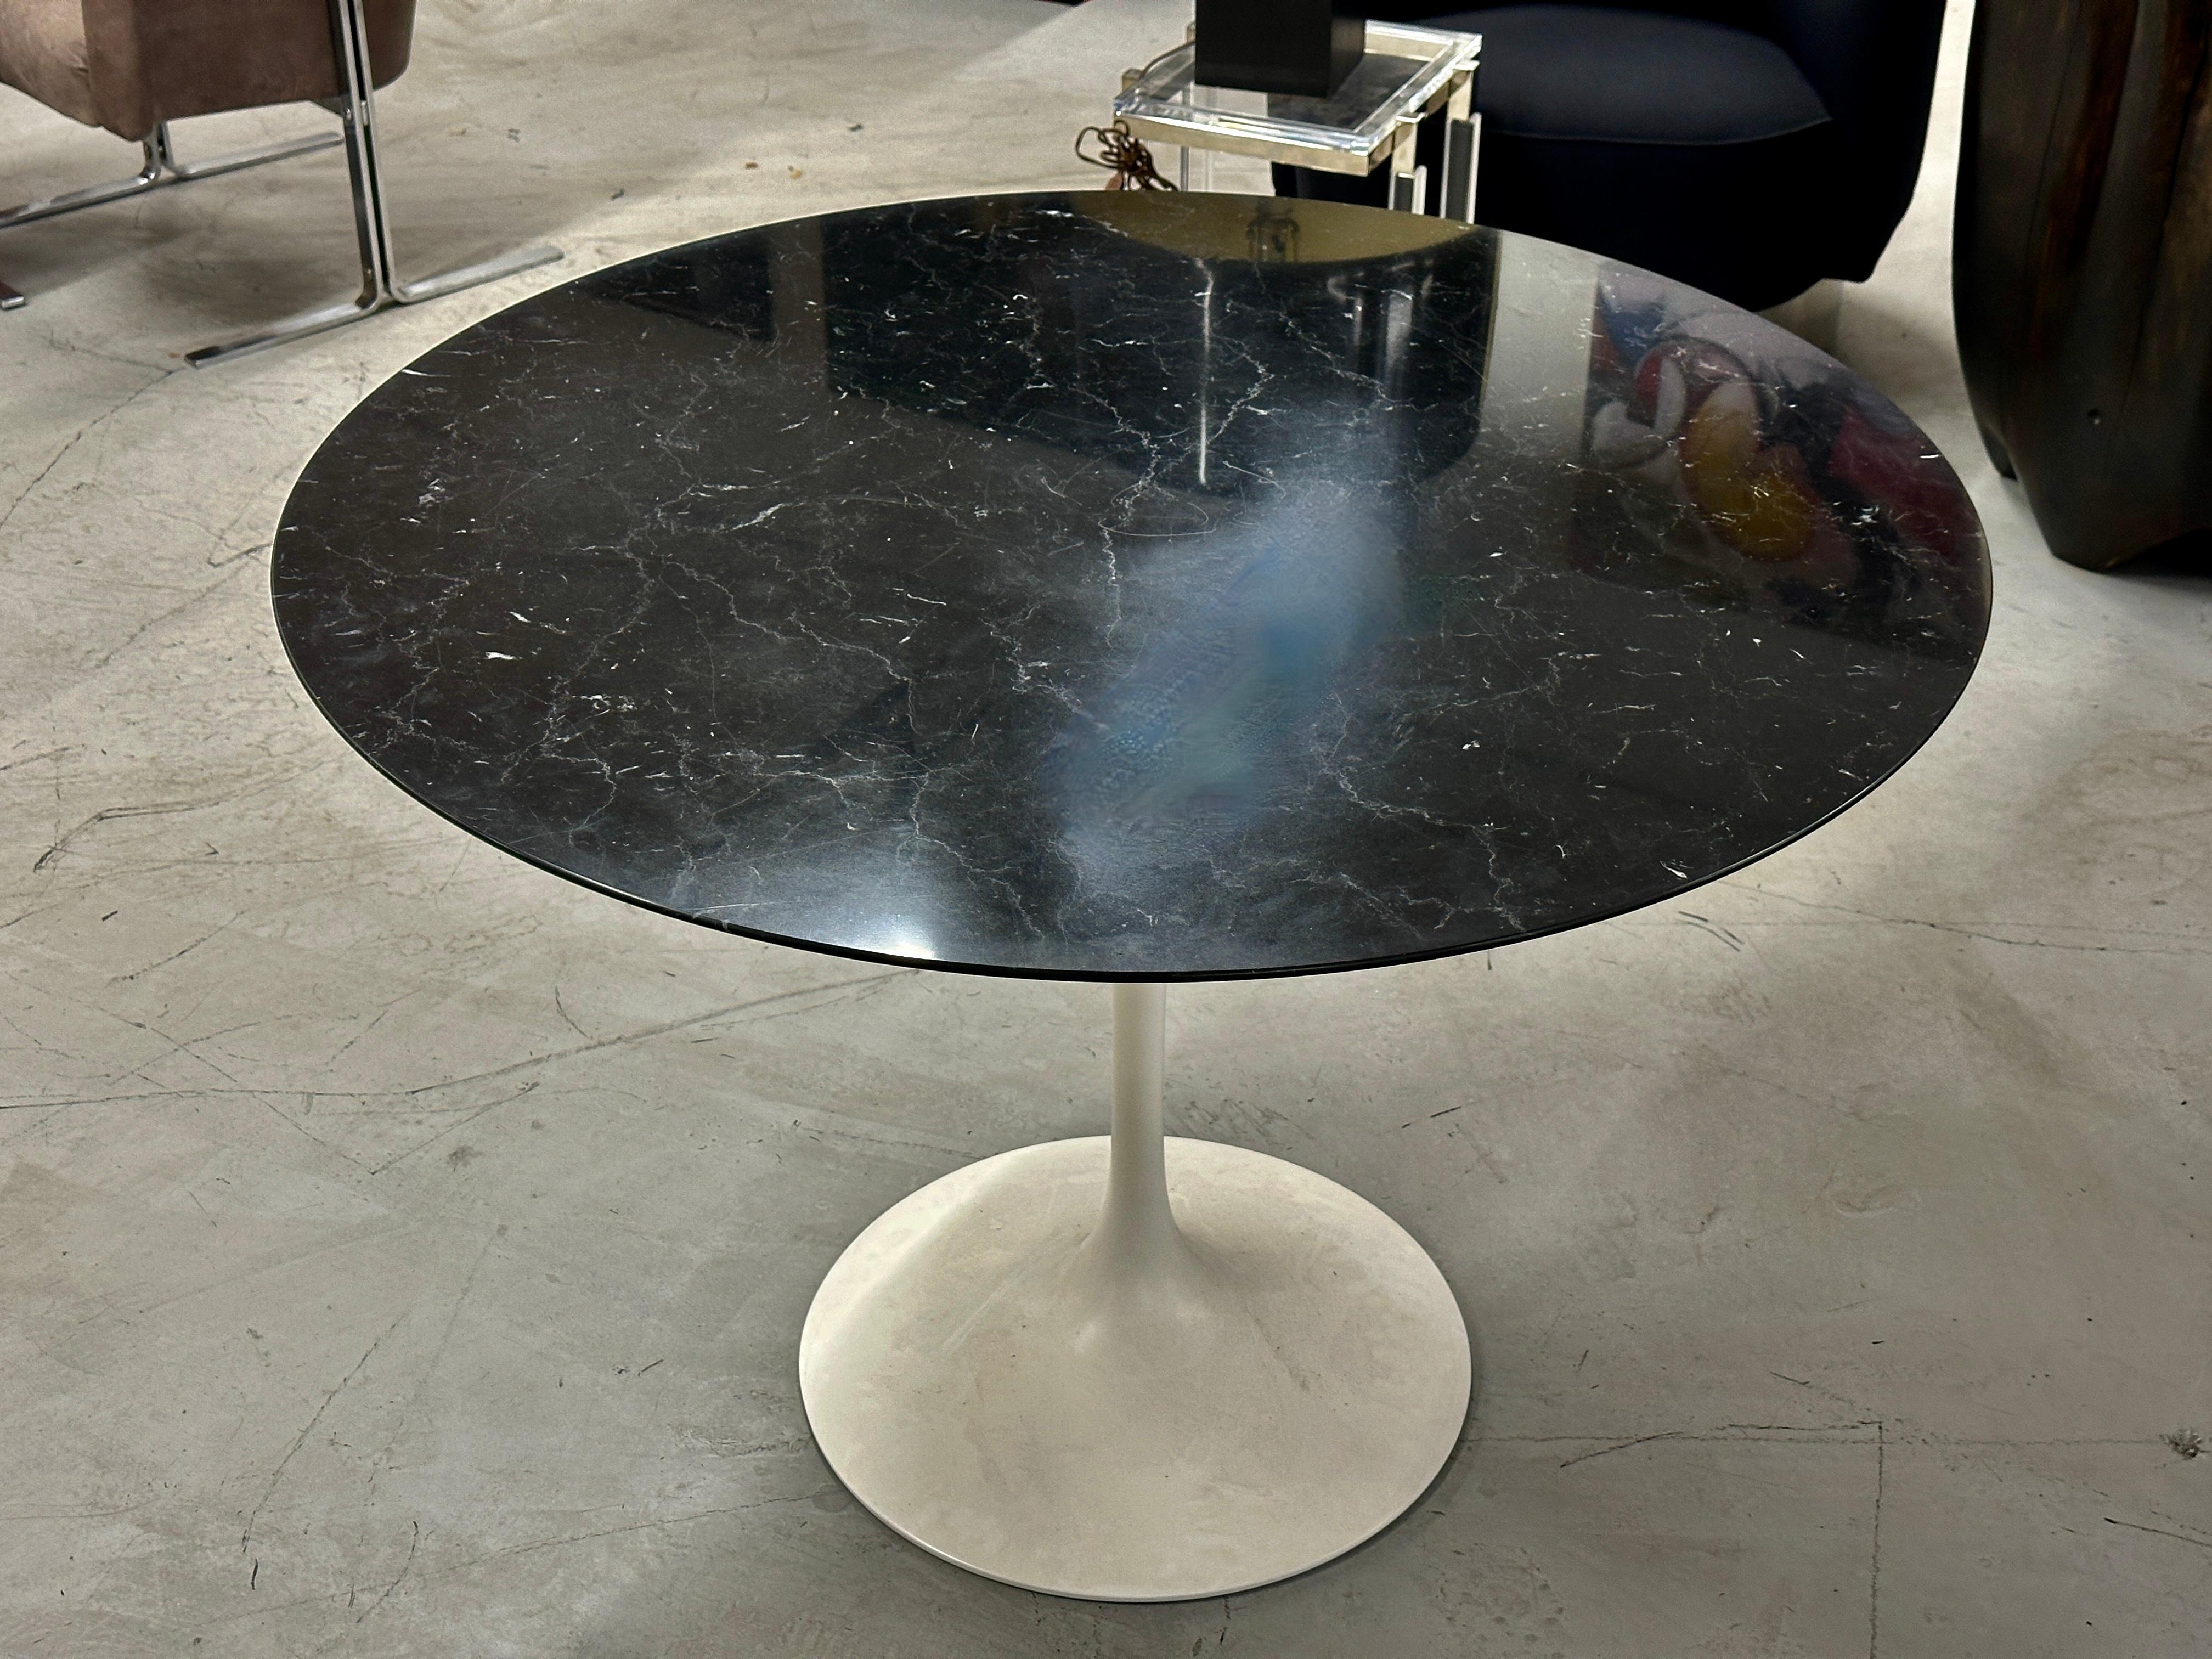 Ein schöner Tulip-Tisch von Knoll, entworfen von Eero Saarinen. Die Tischplatte aus schwarzem Marmor ist wunderschön gemasert, der Sockel weiß. Wir haben diesen Tisch aus dem Nachlass eines Antiquitätenhändlers erworben. Er ist 42 Zoll rund und 28,5